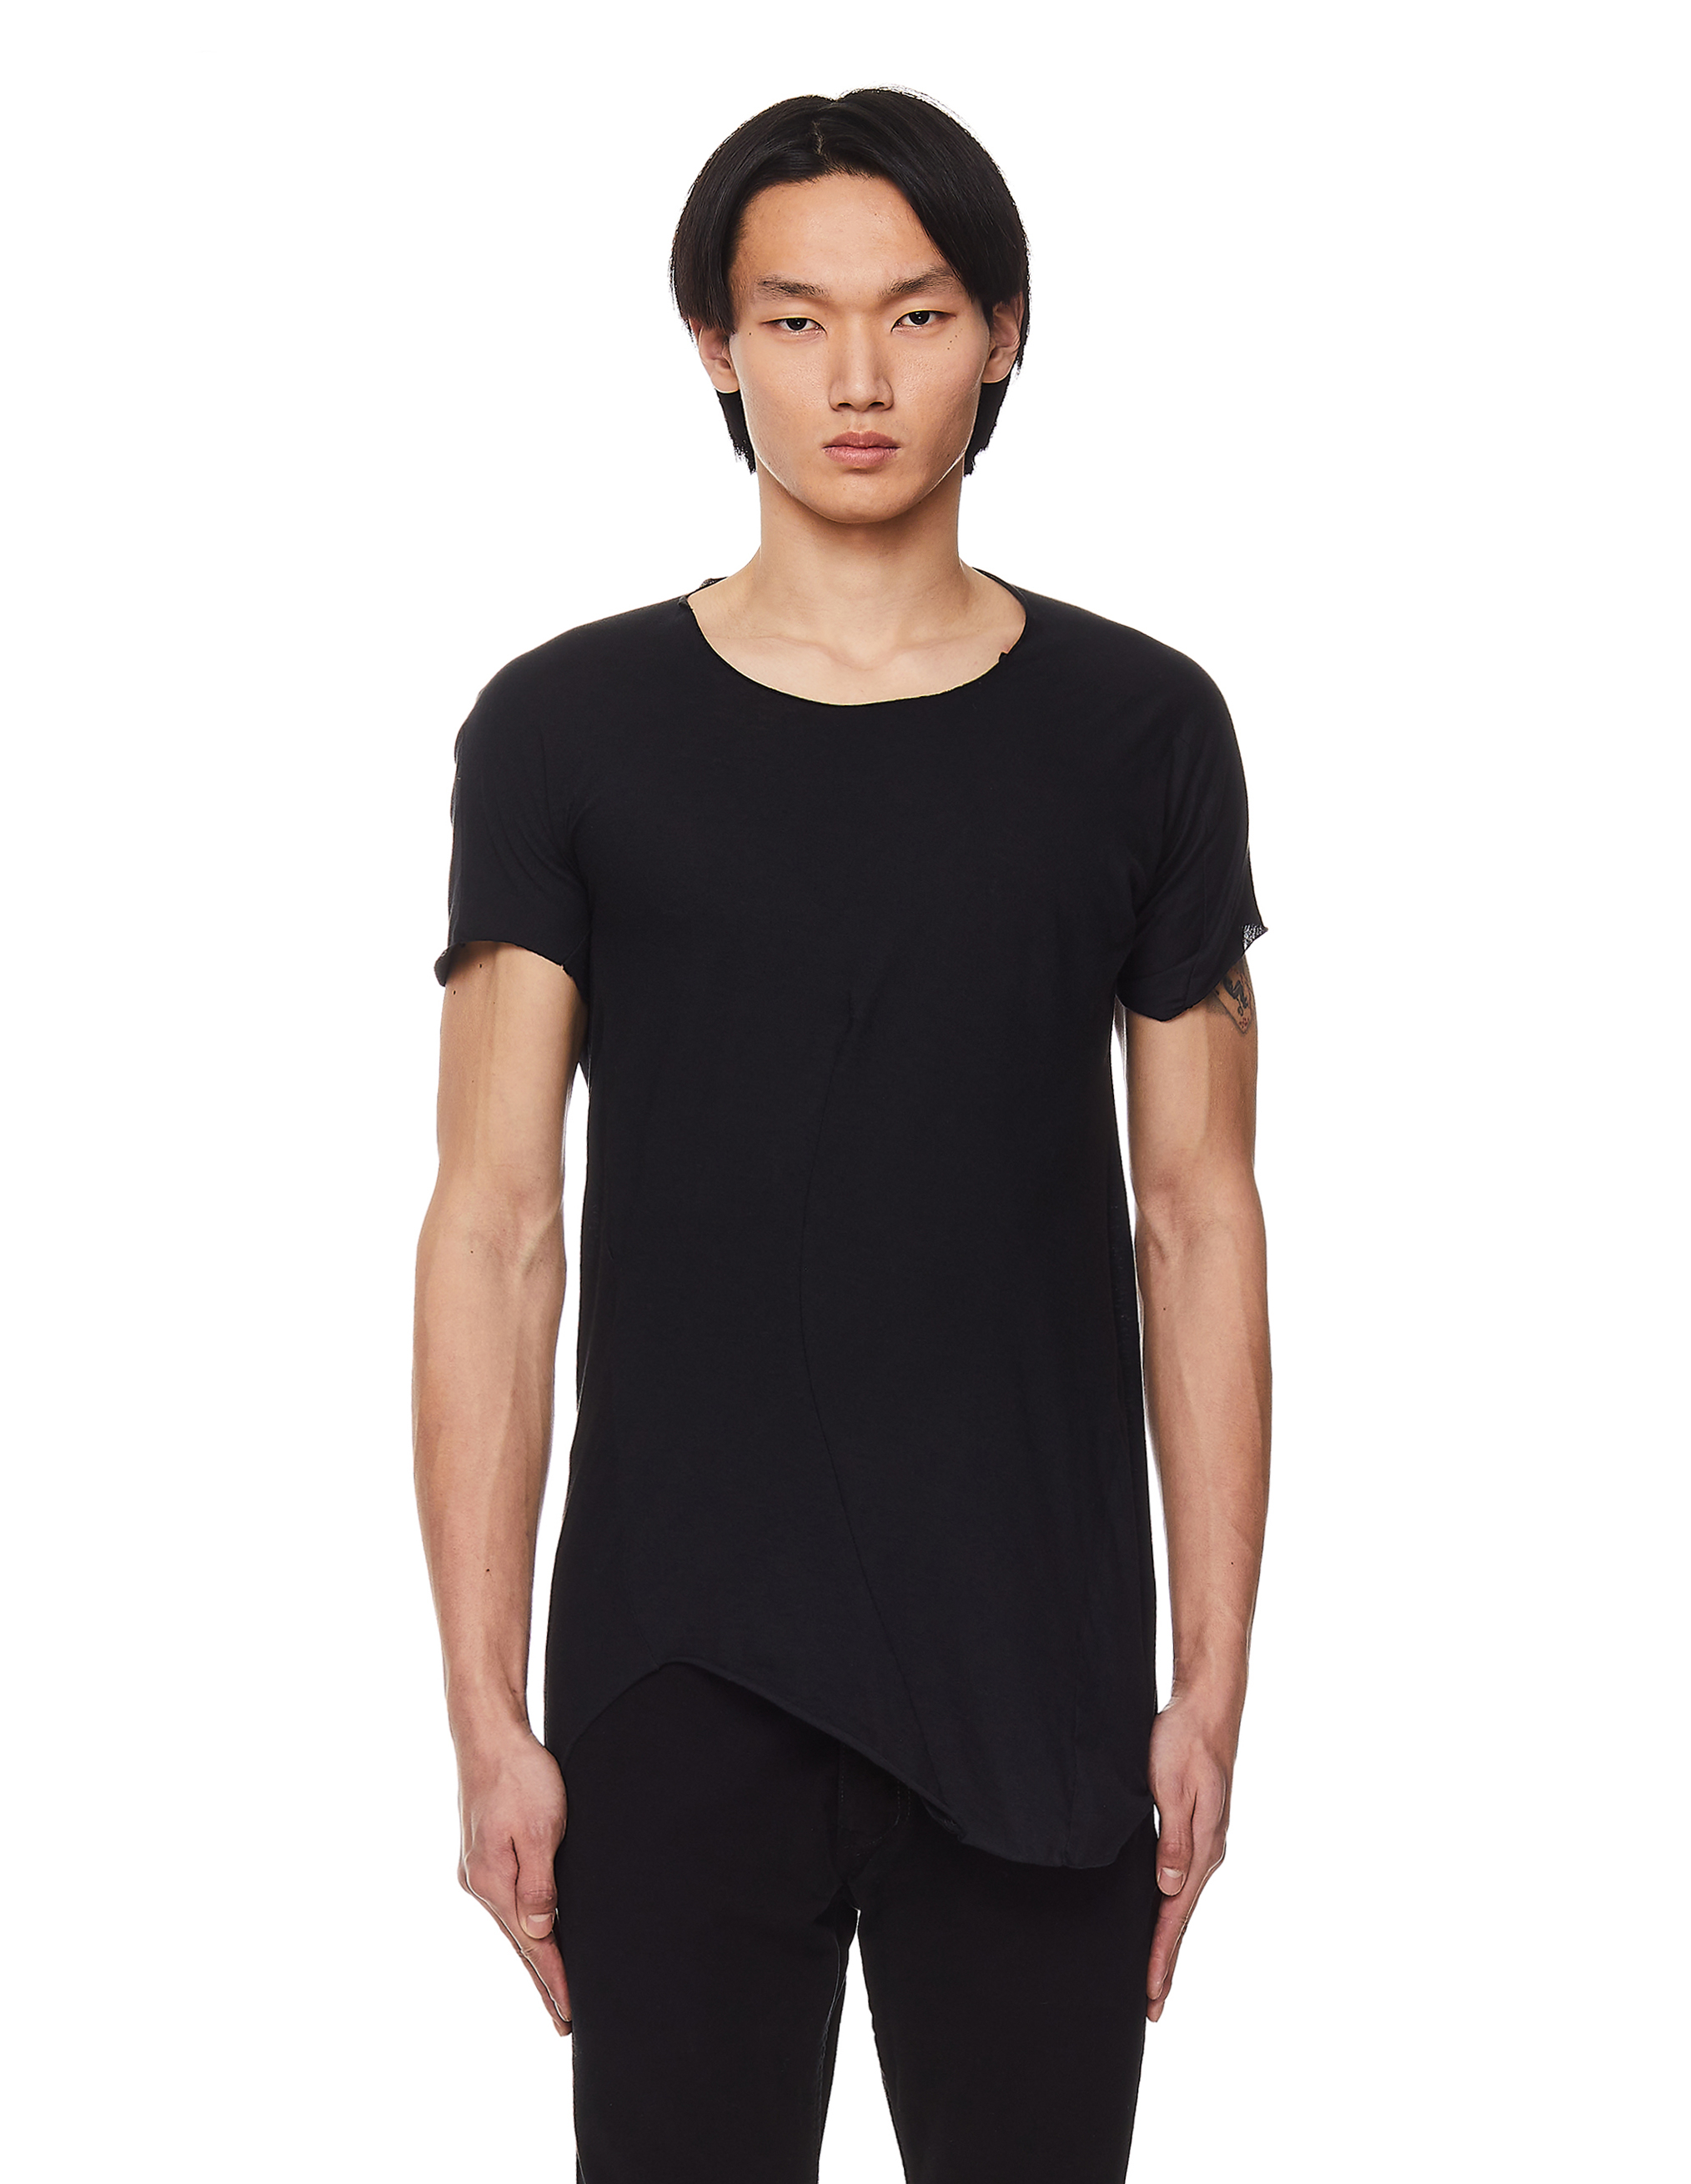 Черная футболка из хлопка и шерсти Leon Emanuel Blanck DIS-M-CT-01/blk, размер 52 DIS-M-CT-01/blk - фото 2